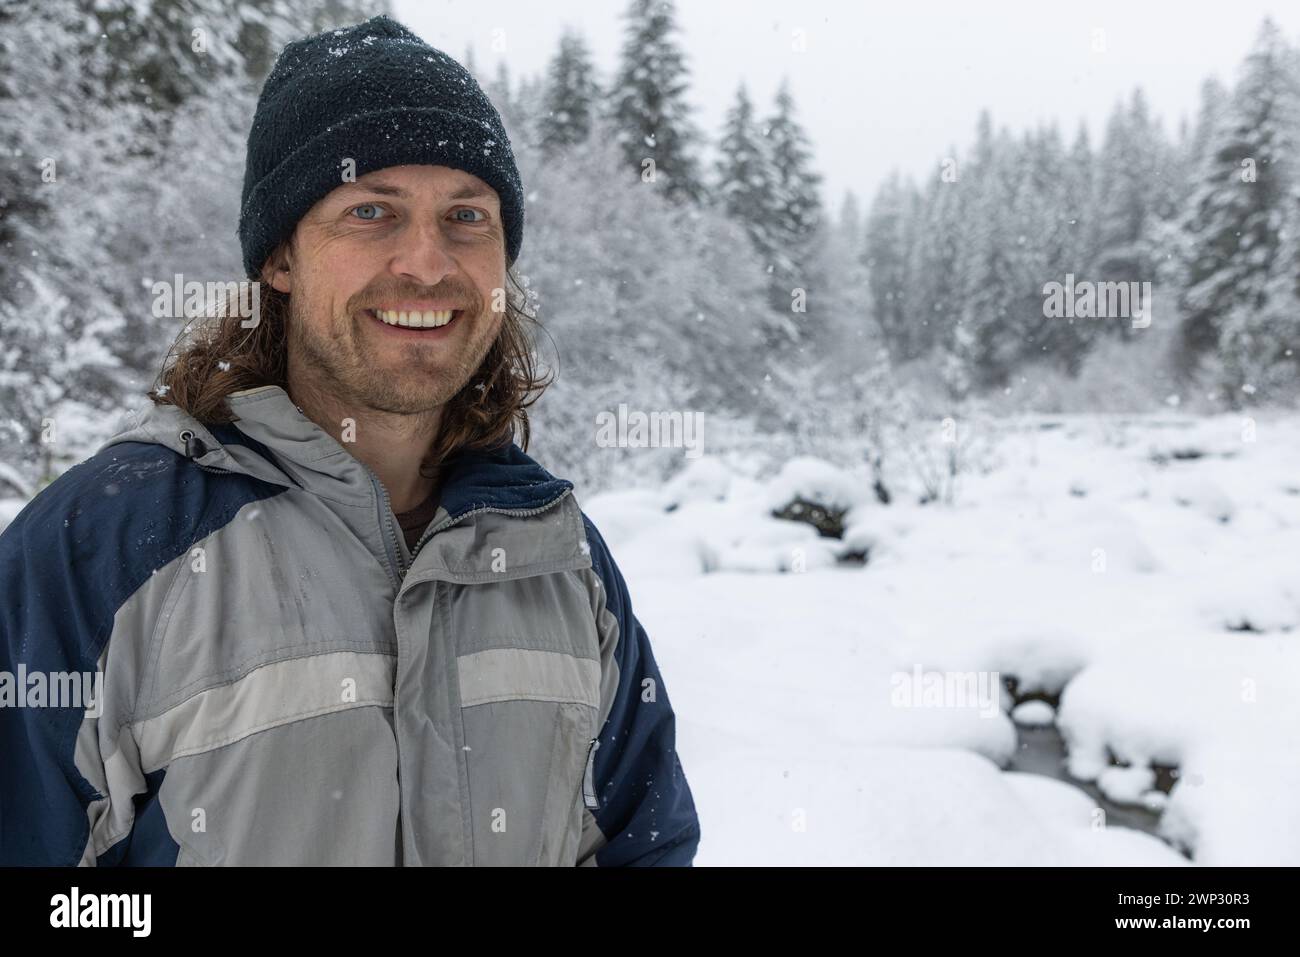 Ein Mann, der eine blau-graue Jacke und einen schwarzen Hut trägt, lächelt im Schnee Stockfoto